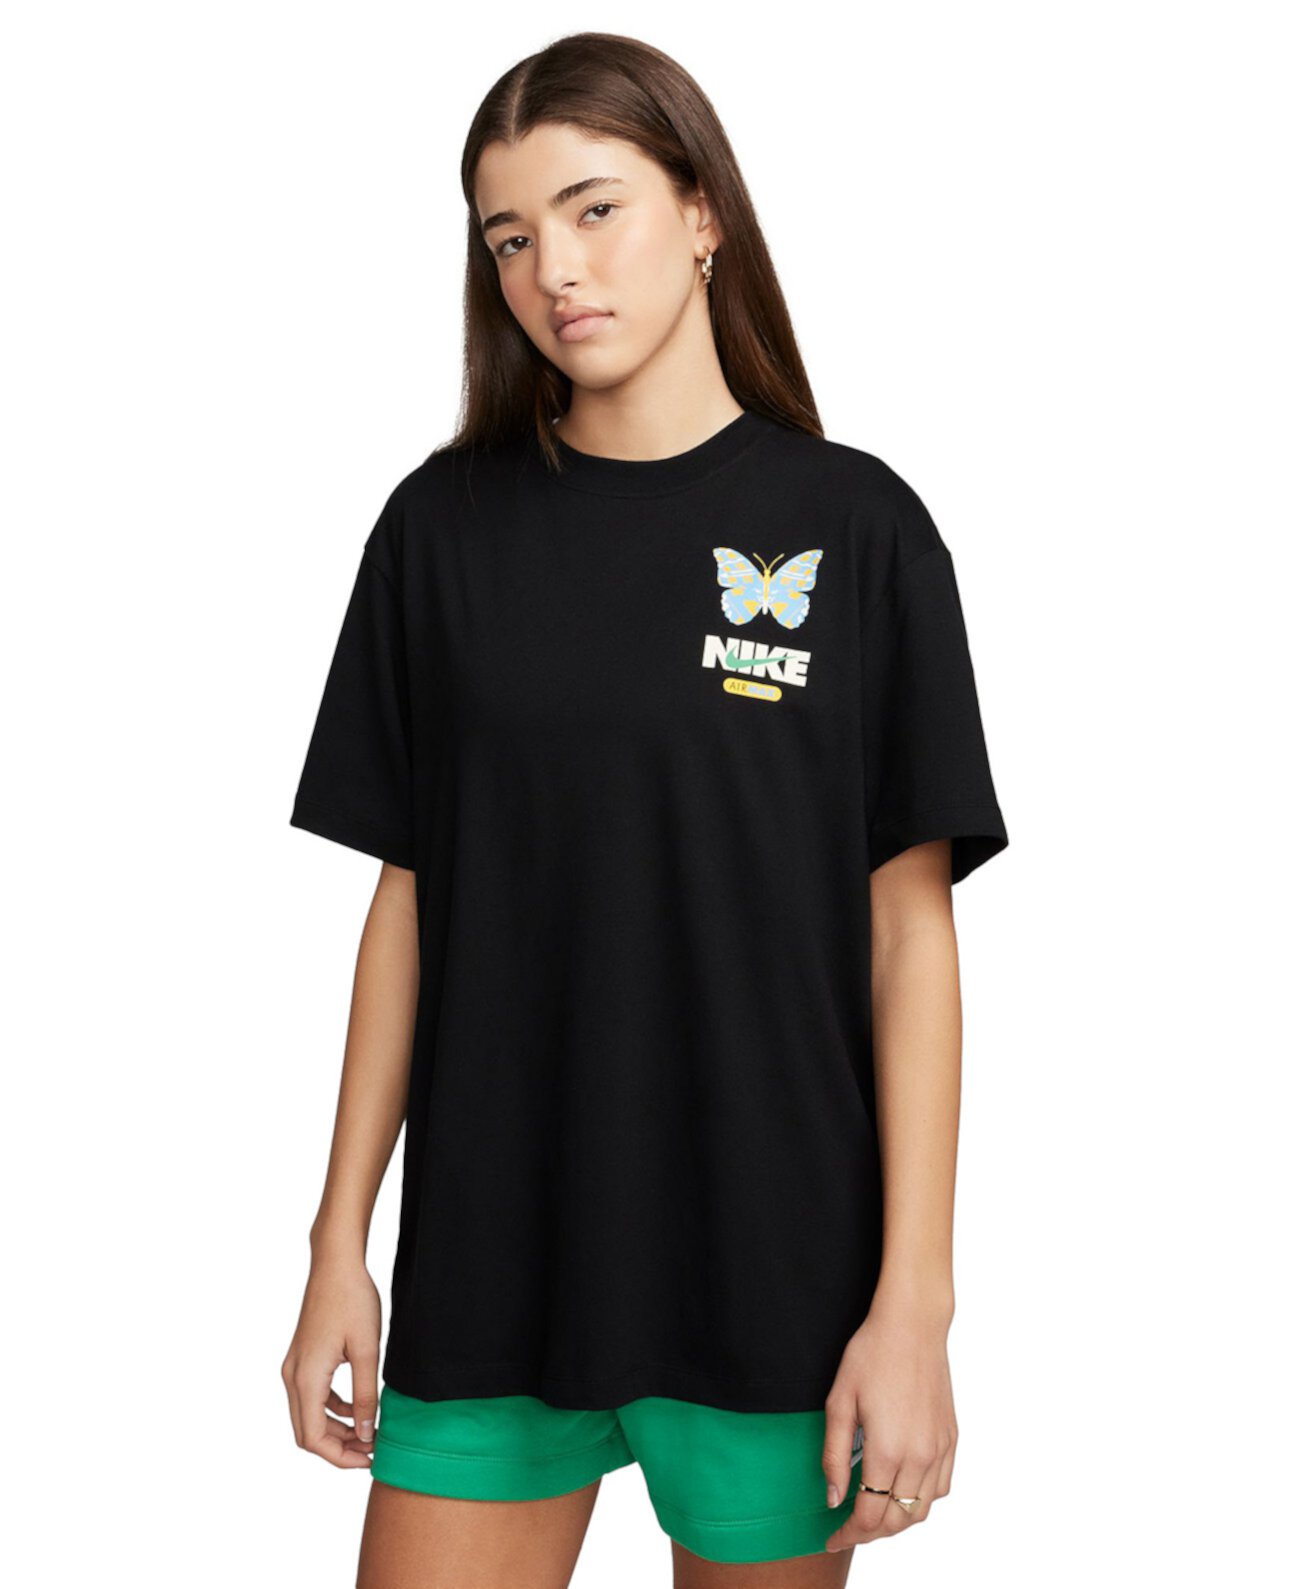 Женская спортивная футболка с круглым вырезом и рисунком бойфренда Nike